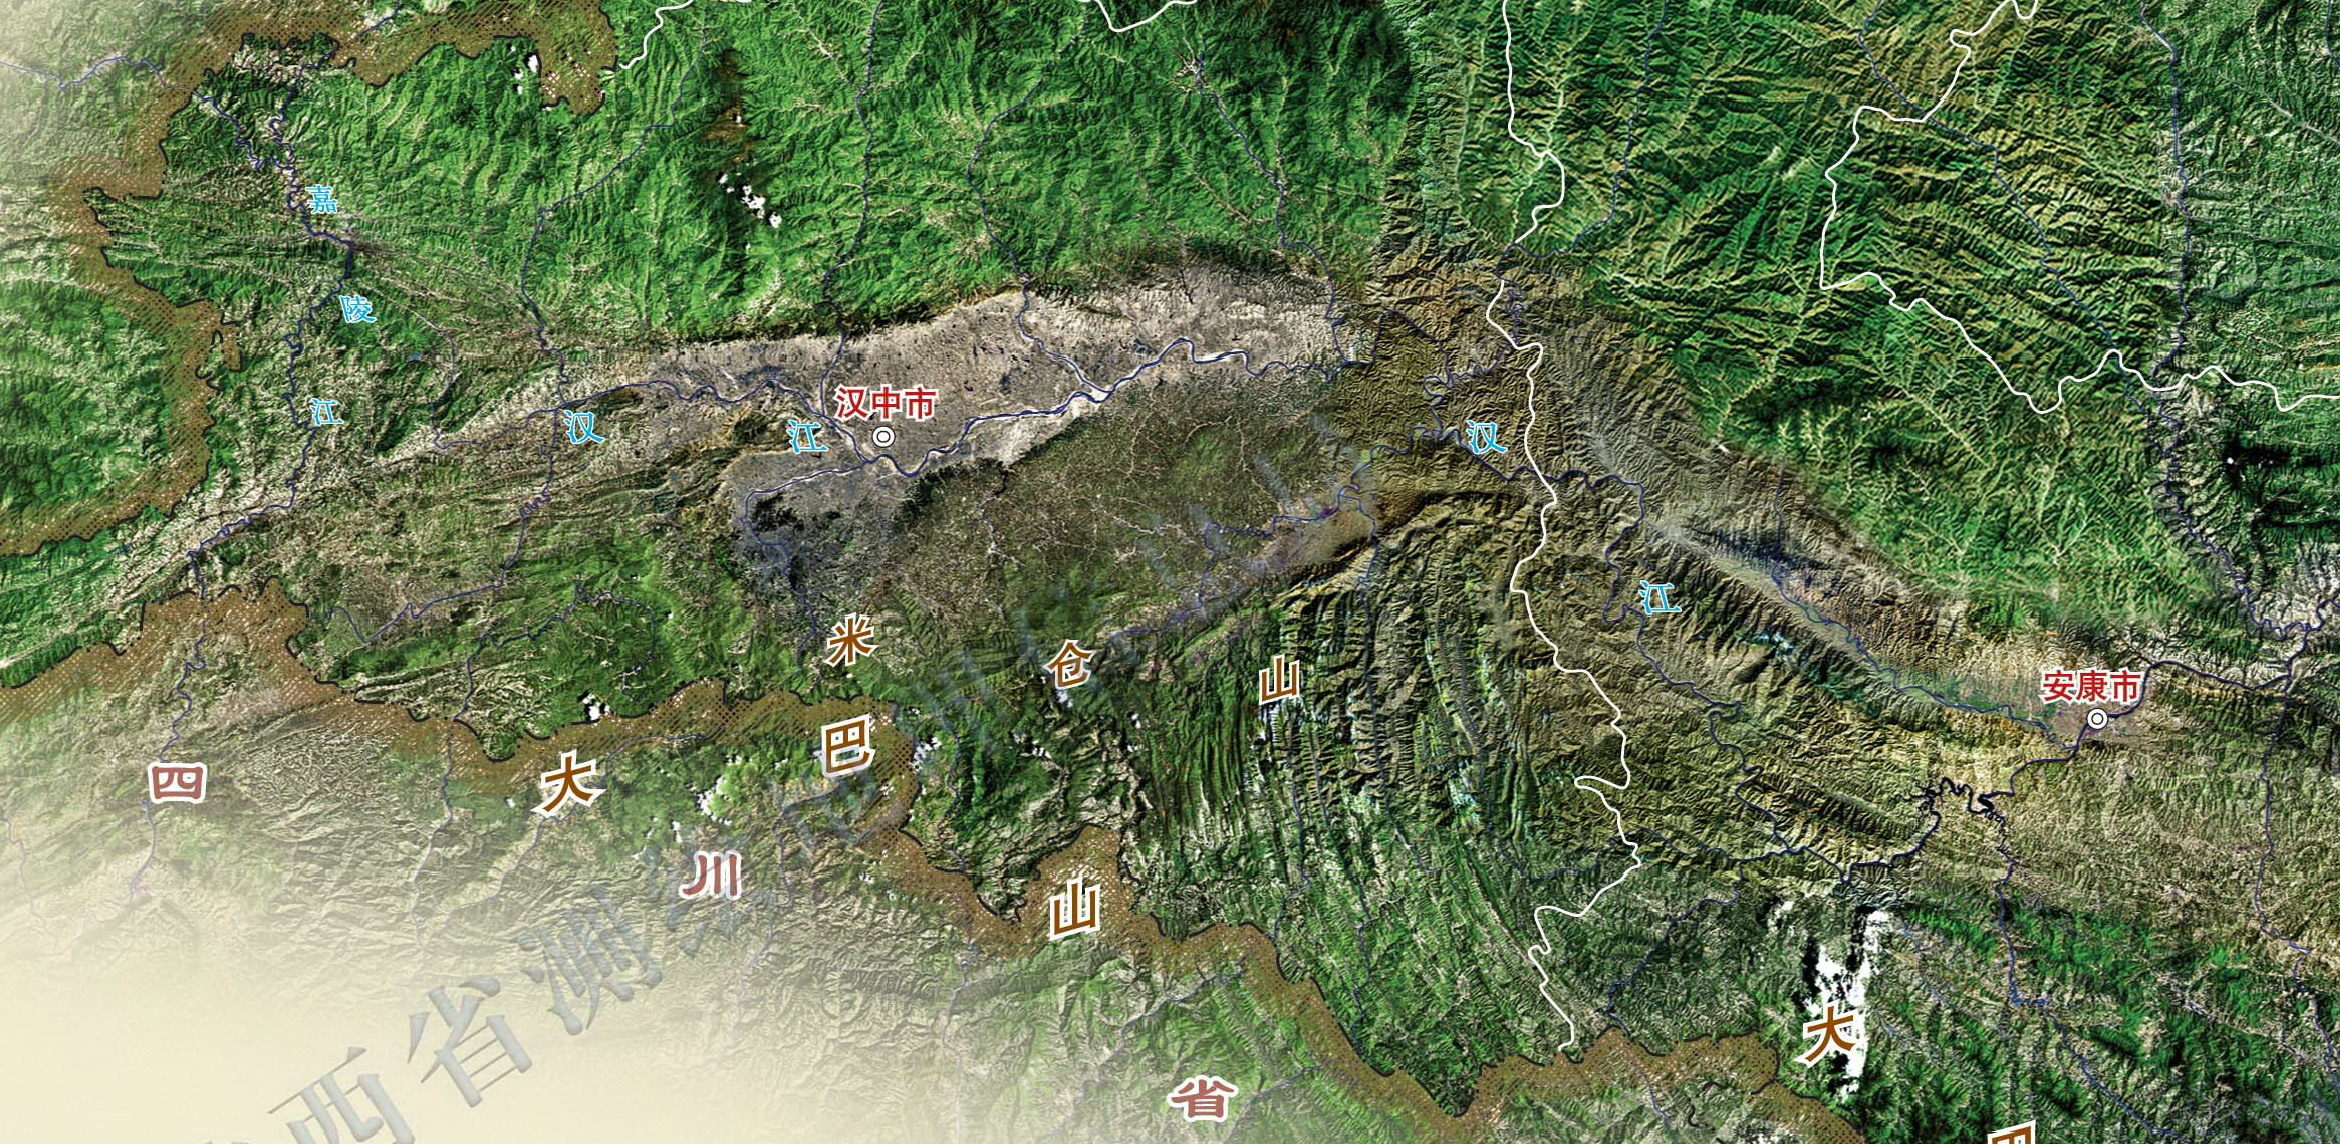 米倉山 地理位置